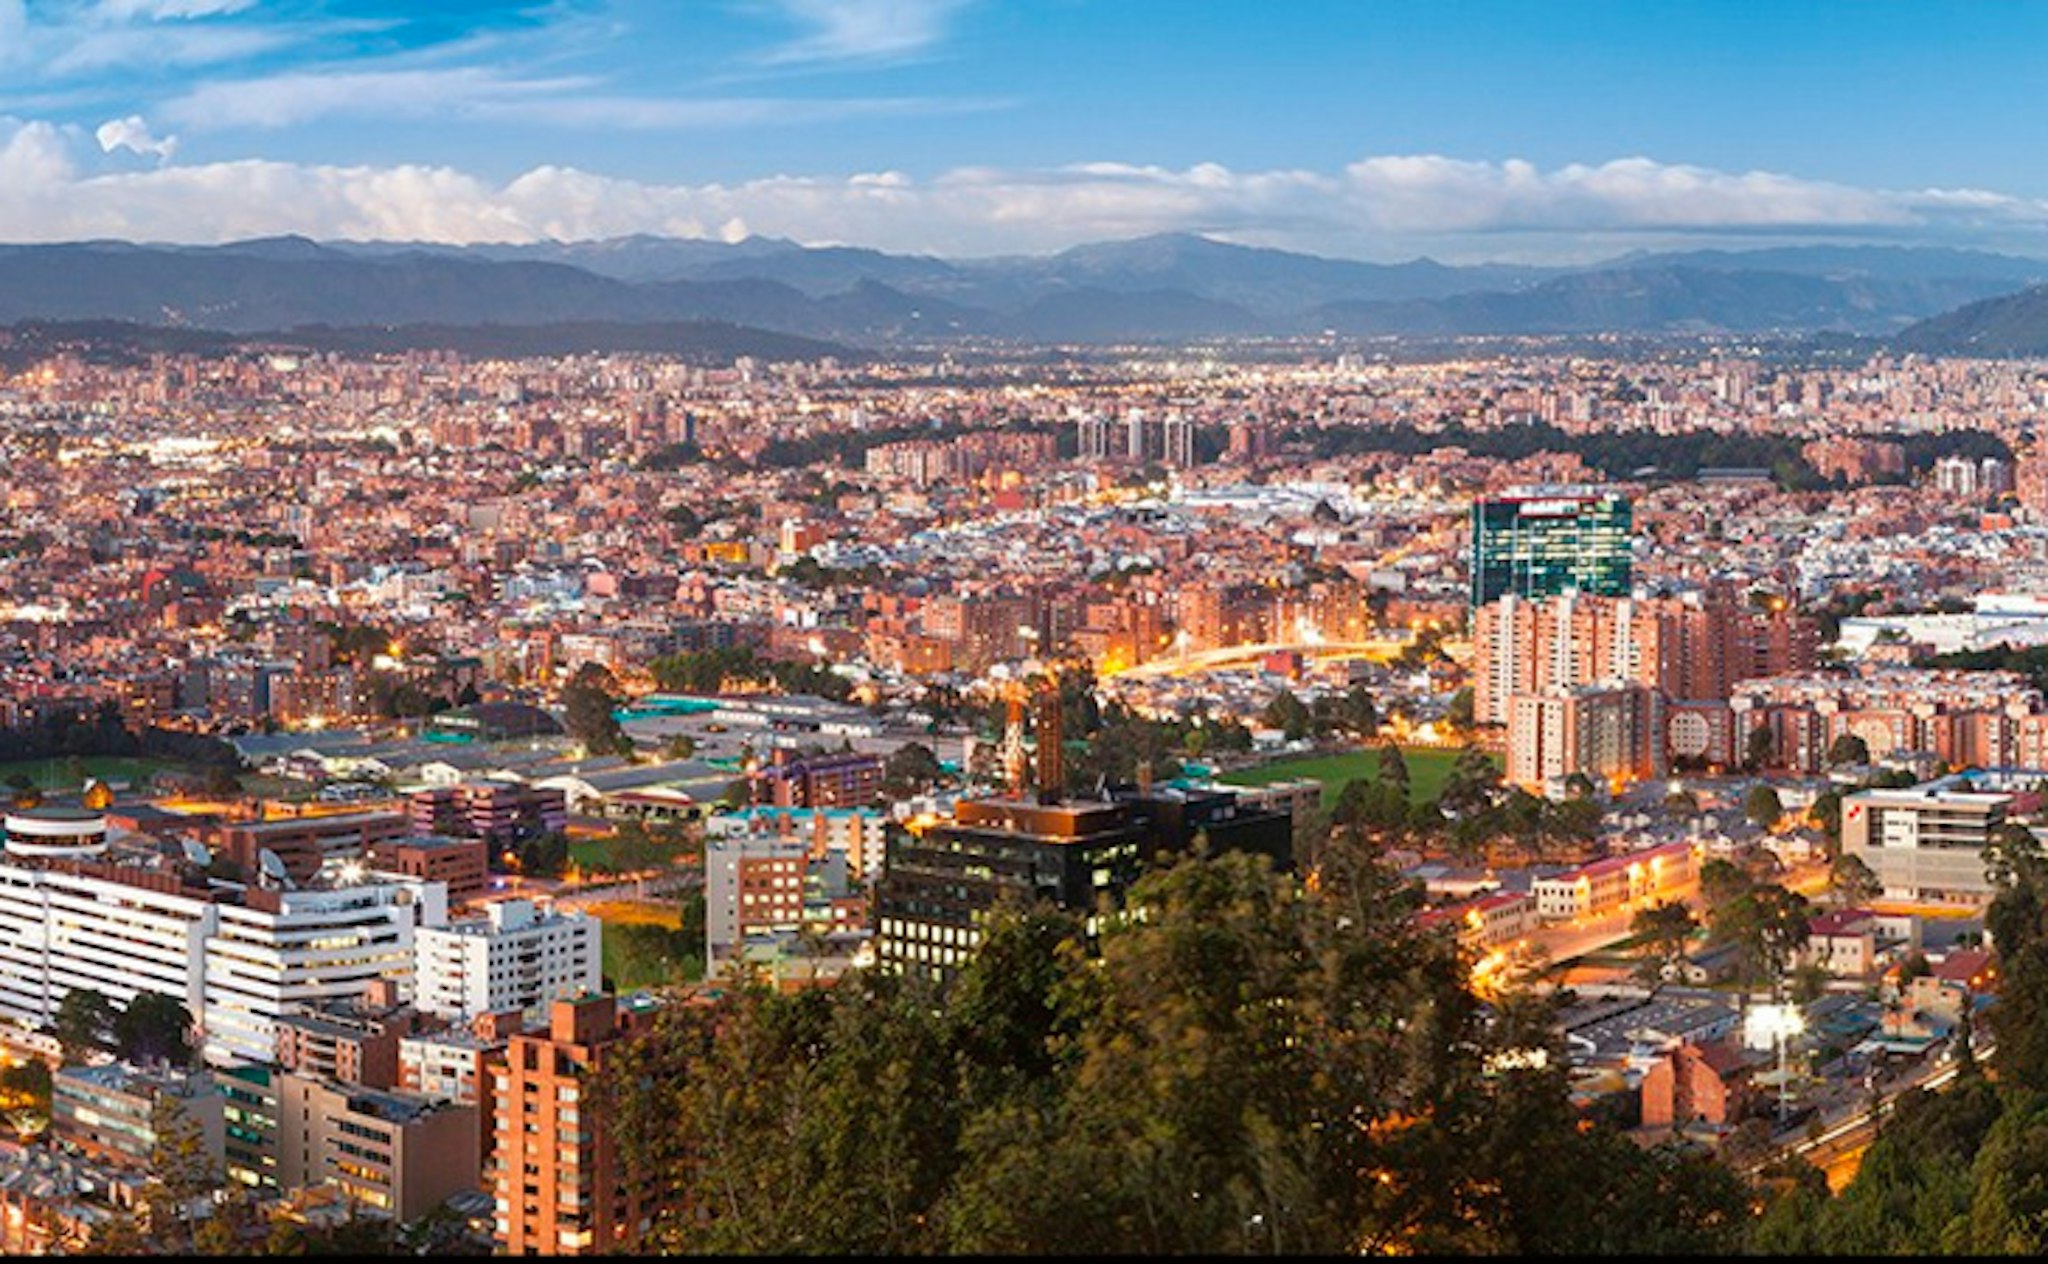 Image Comprar apartamento en el norte de Bogotá 